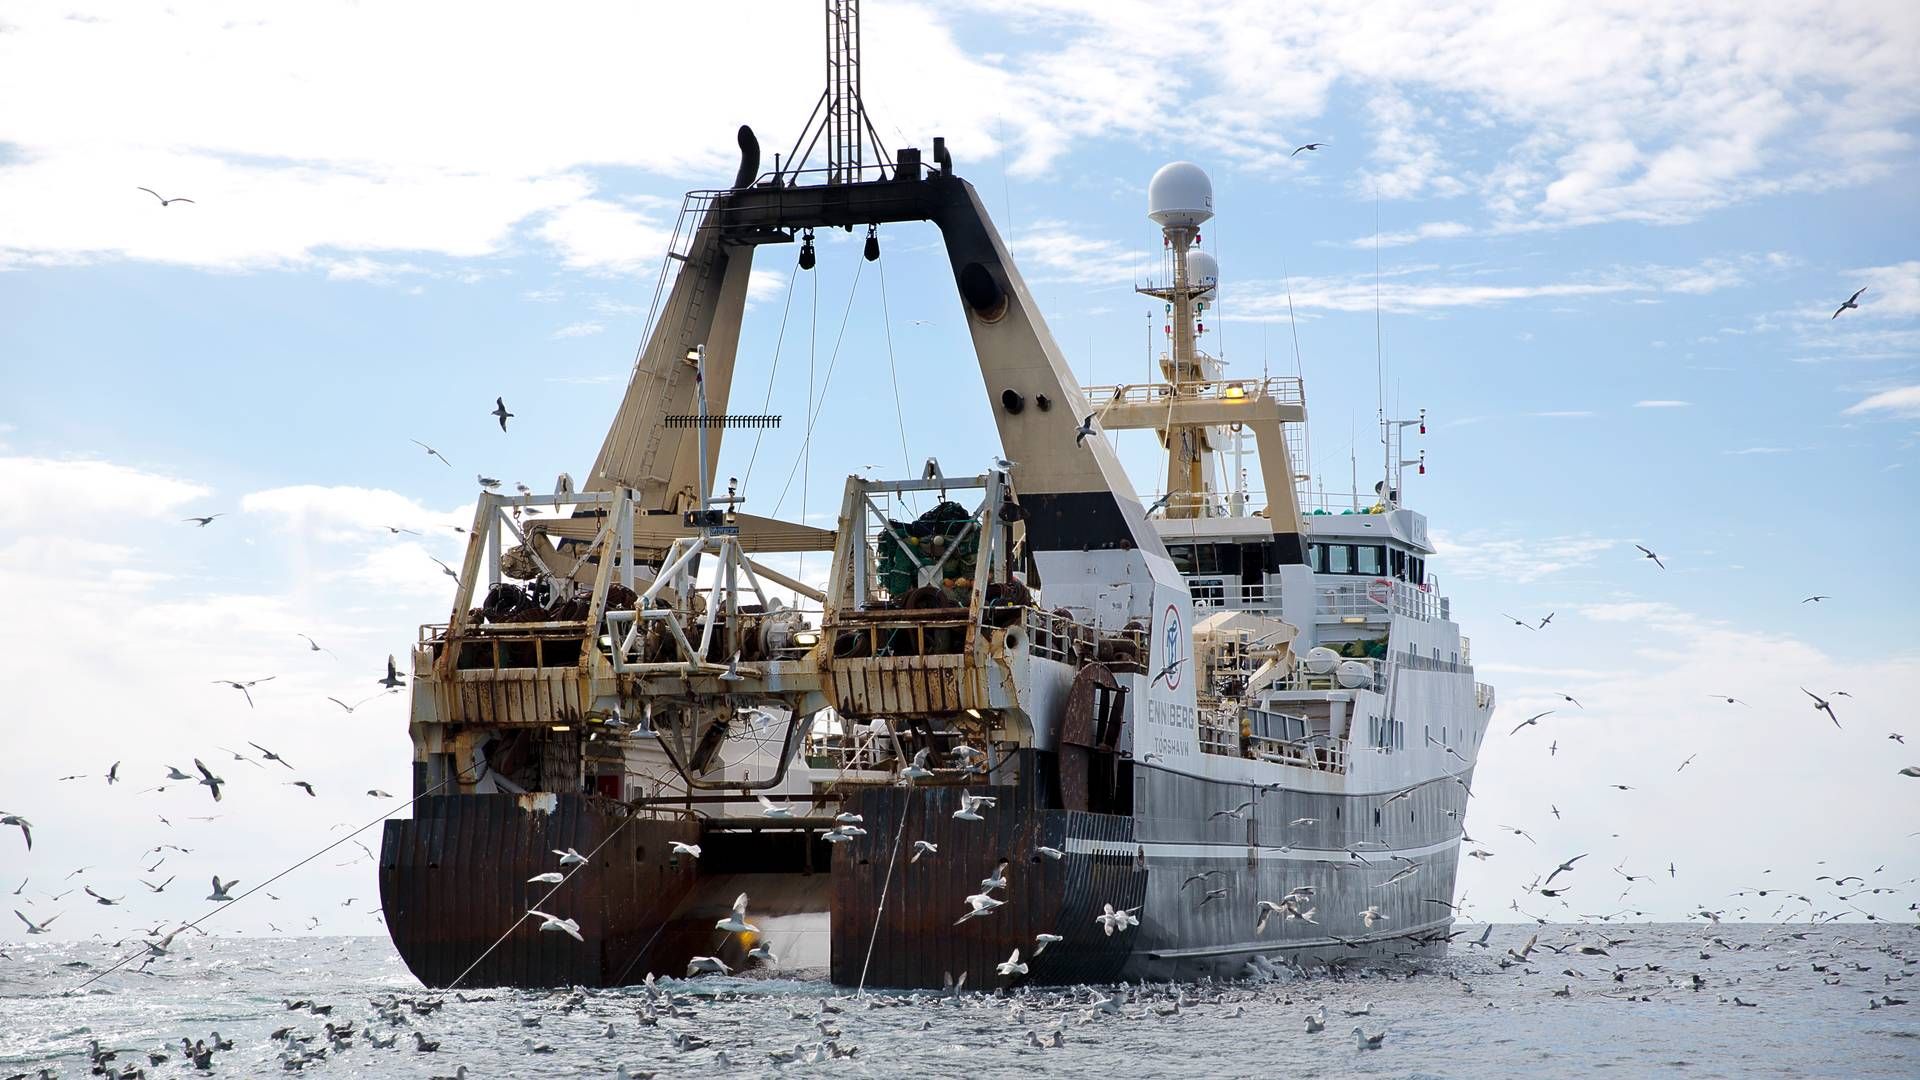 En regnefejl lavet af myndighederne har forårsaget, at store fiskerivirksomheder har fået ekstra kvoter - og flere end de i henhold til kvoteloftet har ret til. | Foto: Per Folkver/Ritzau Scanpix.